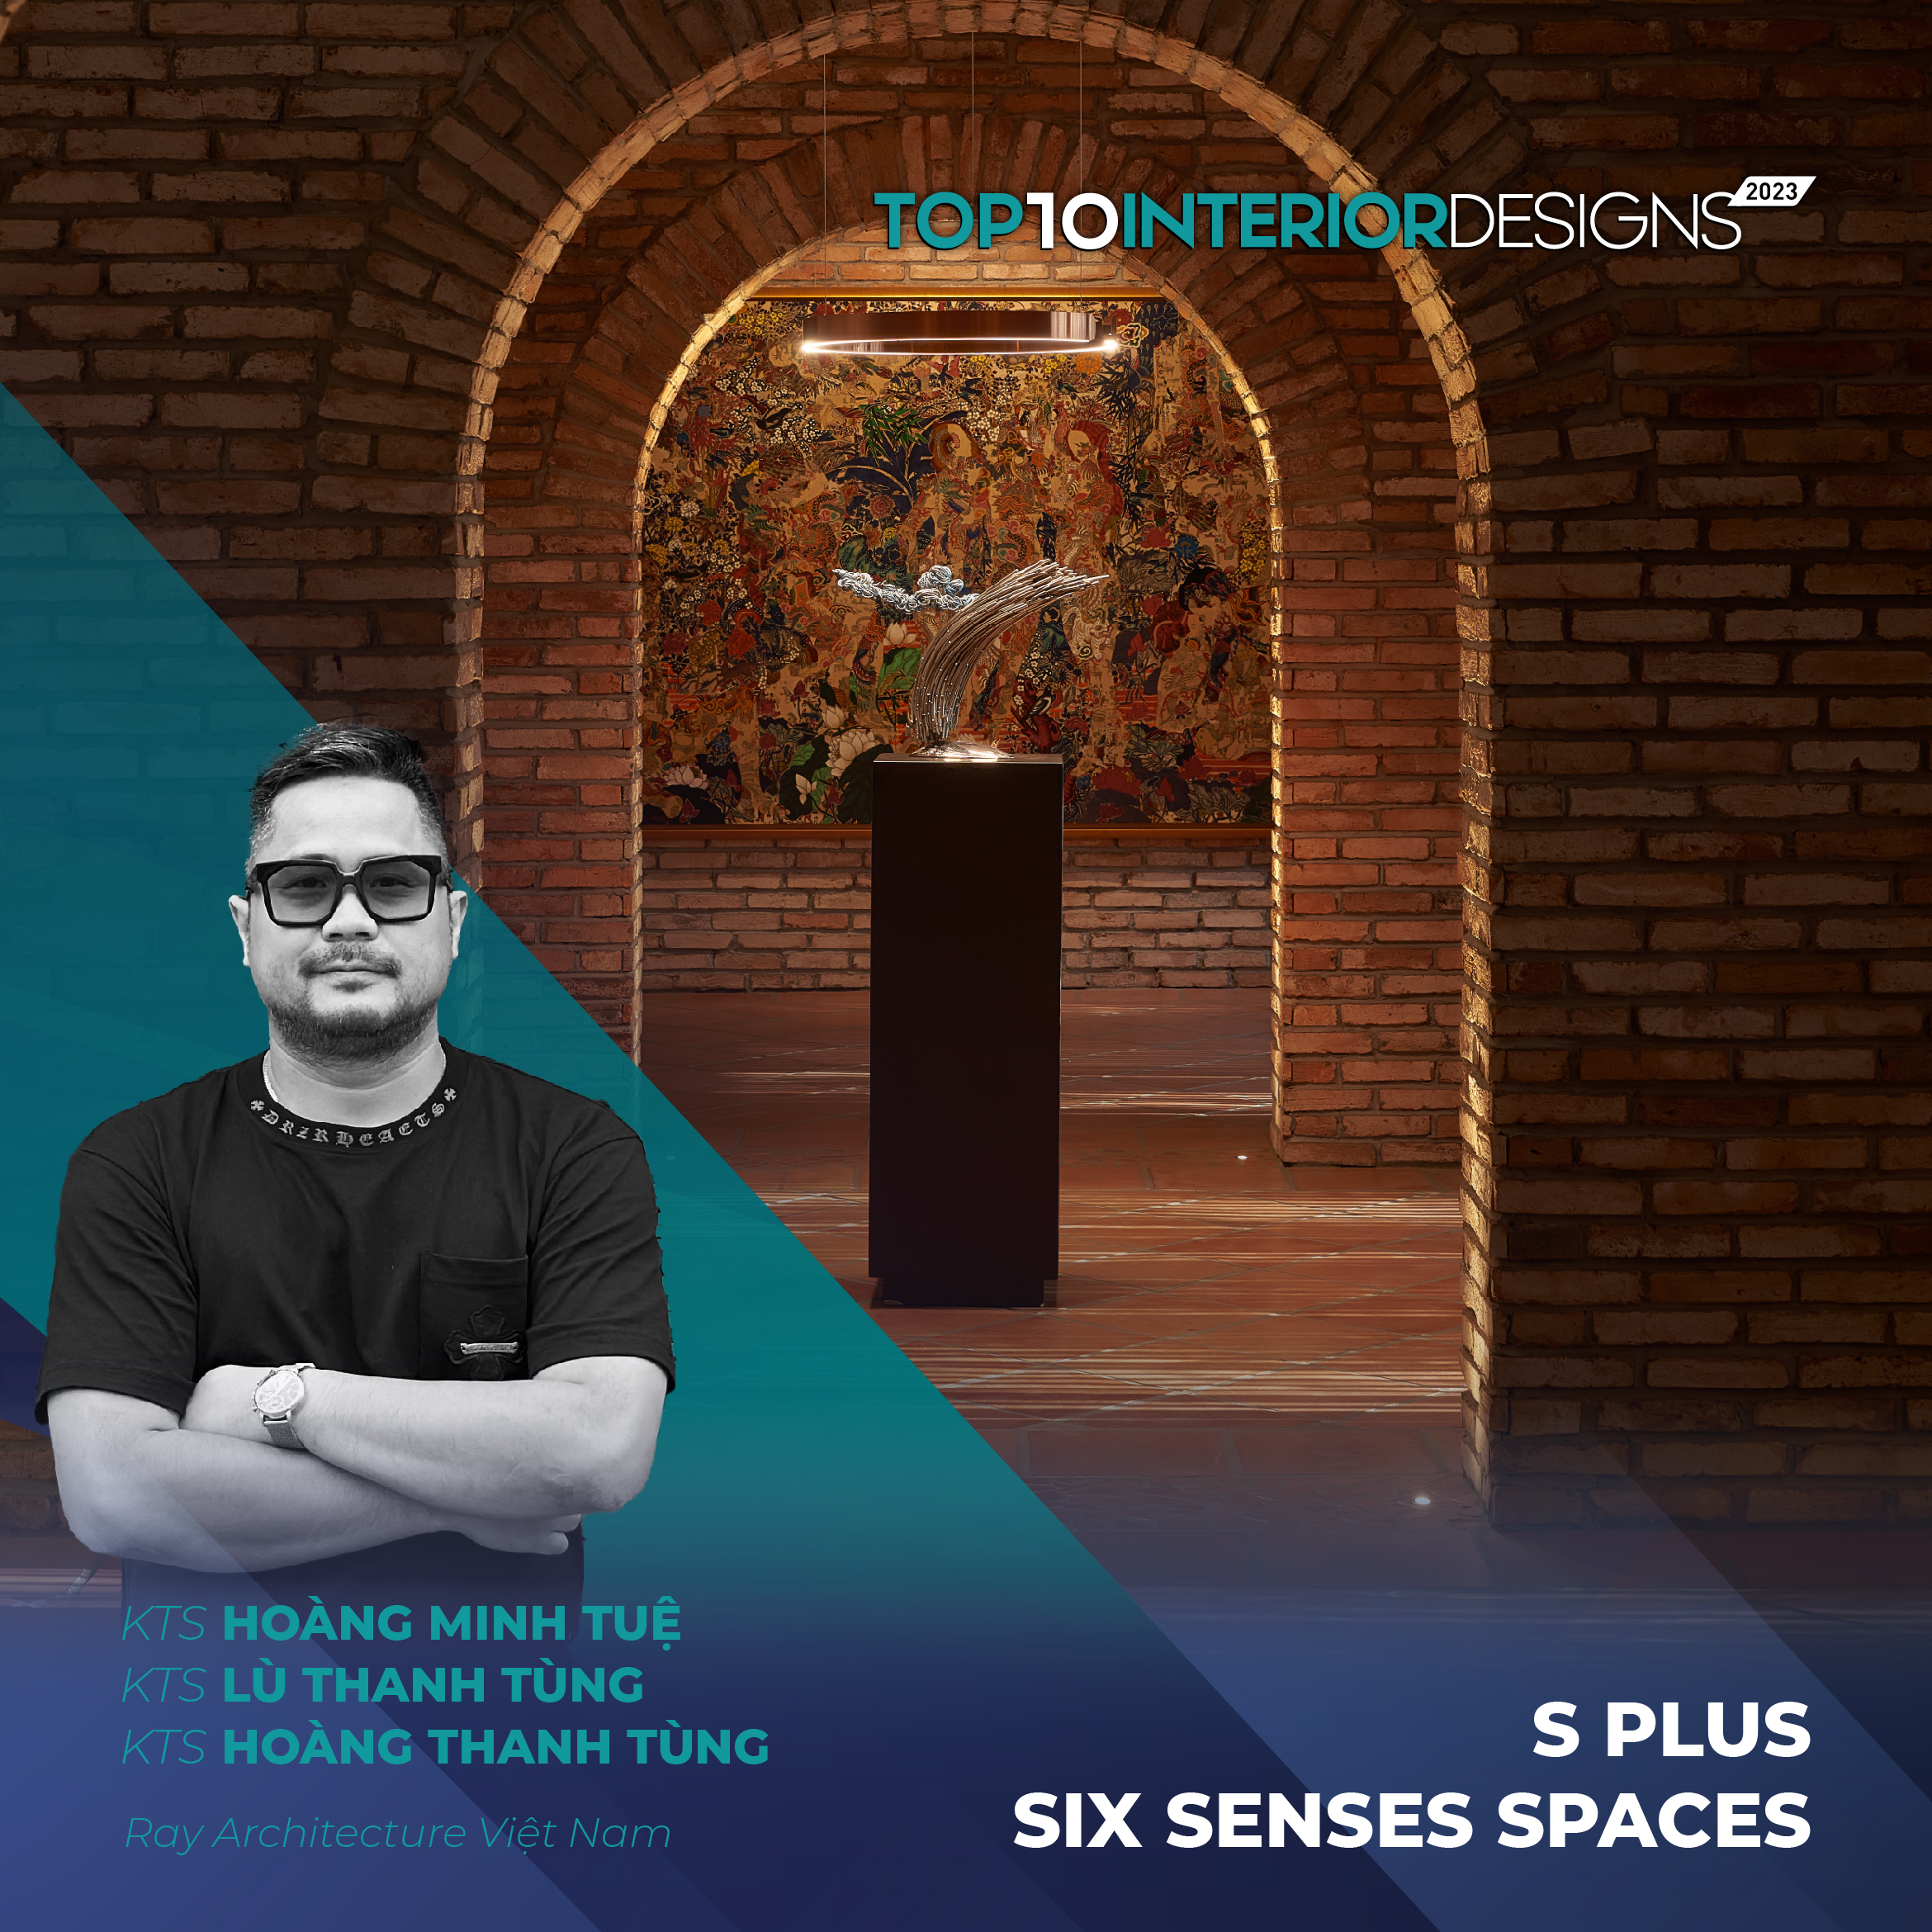 S plus - Six Senses Spaces